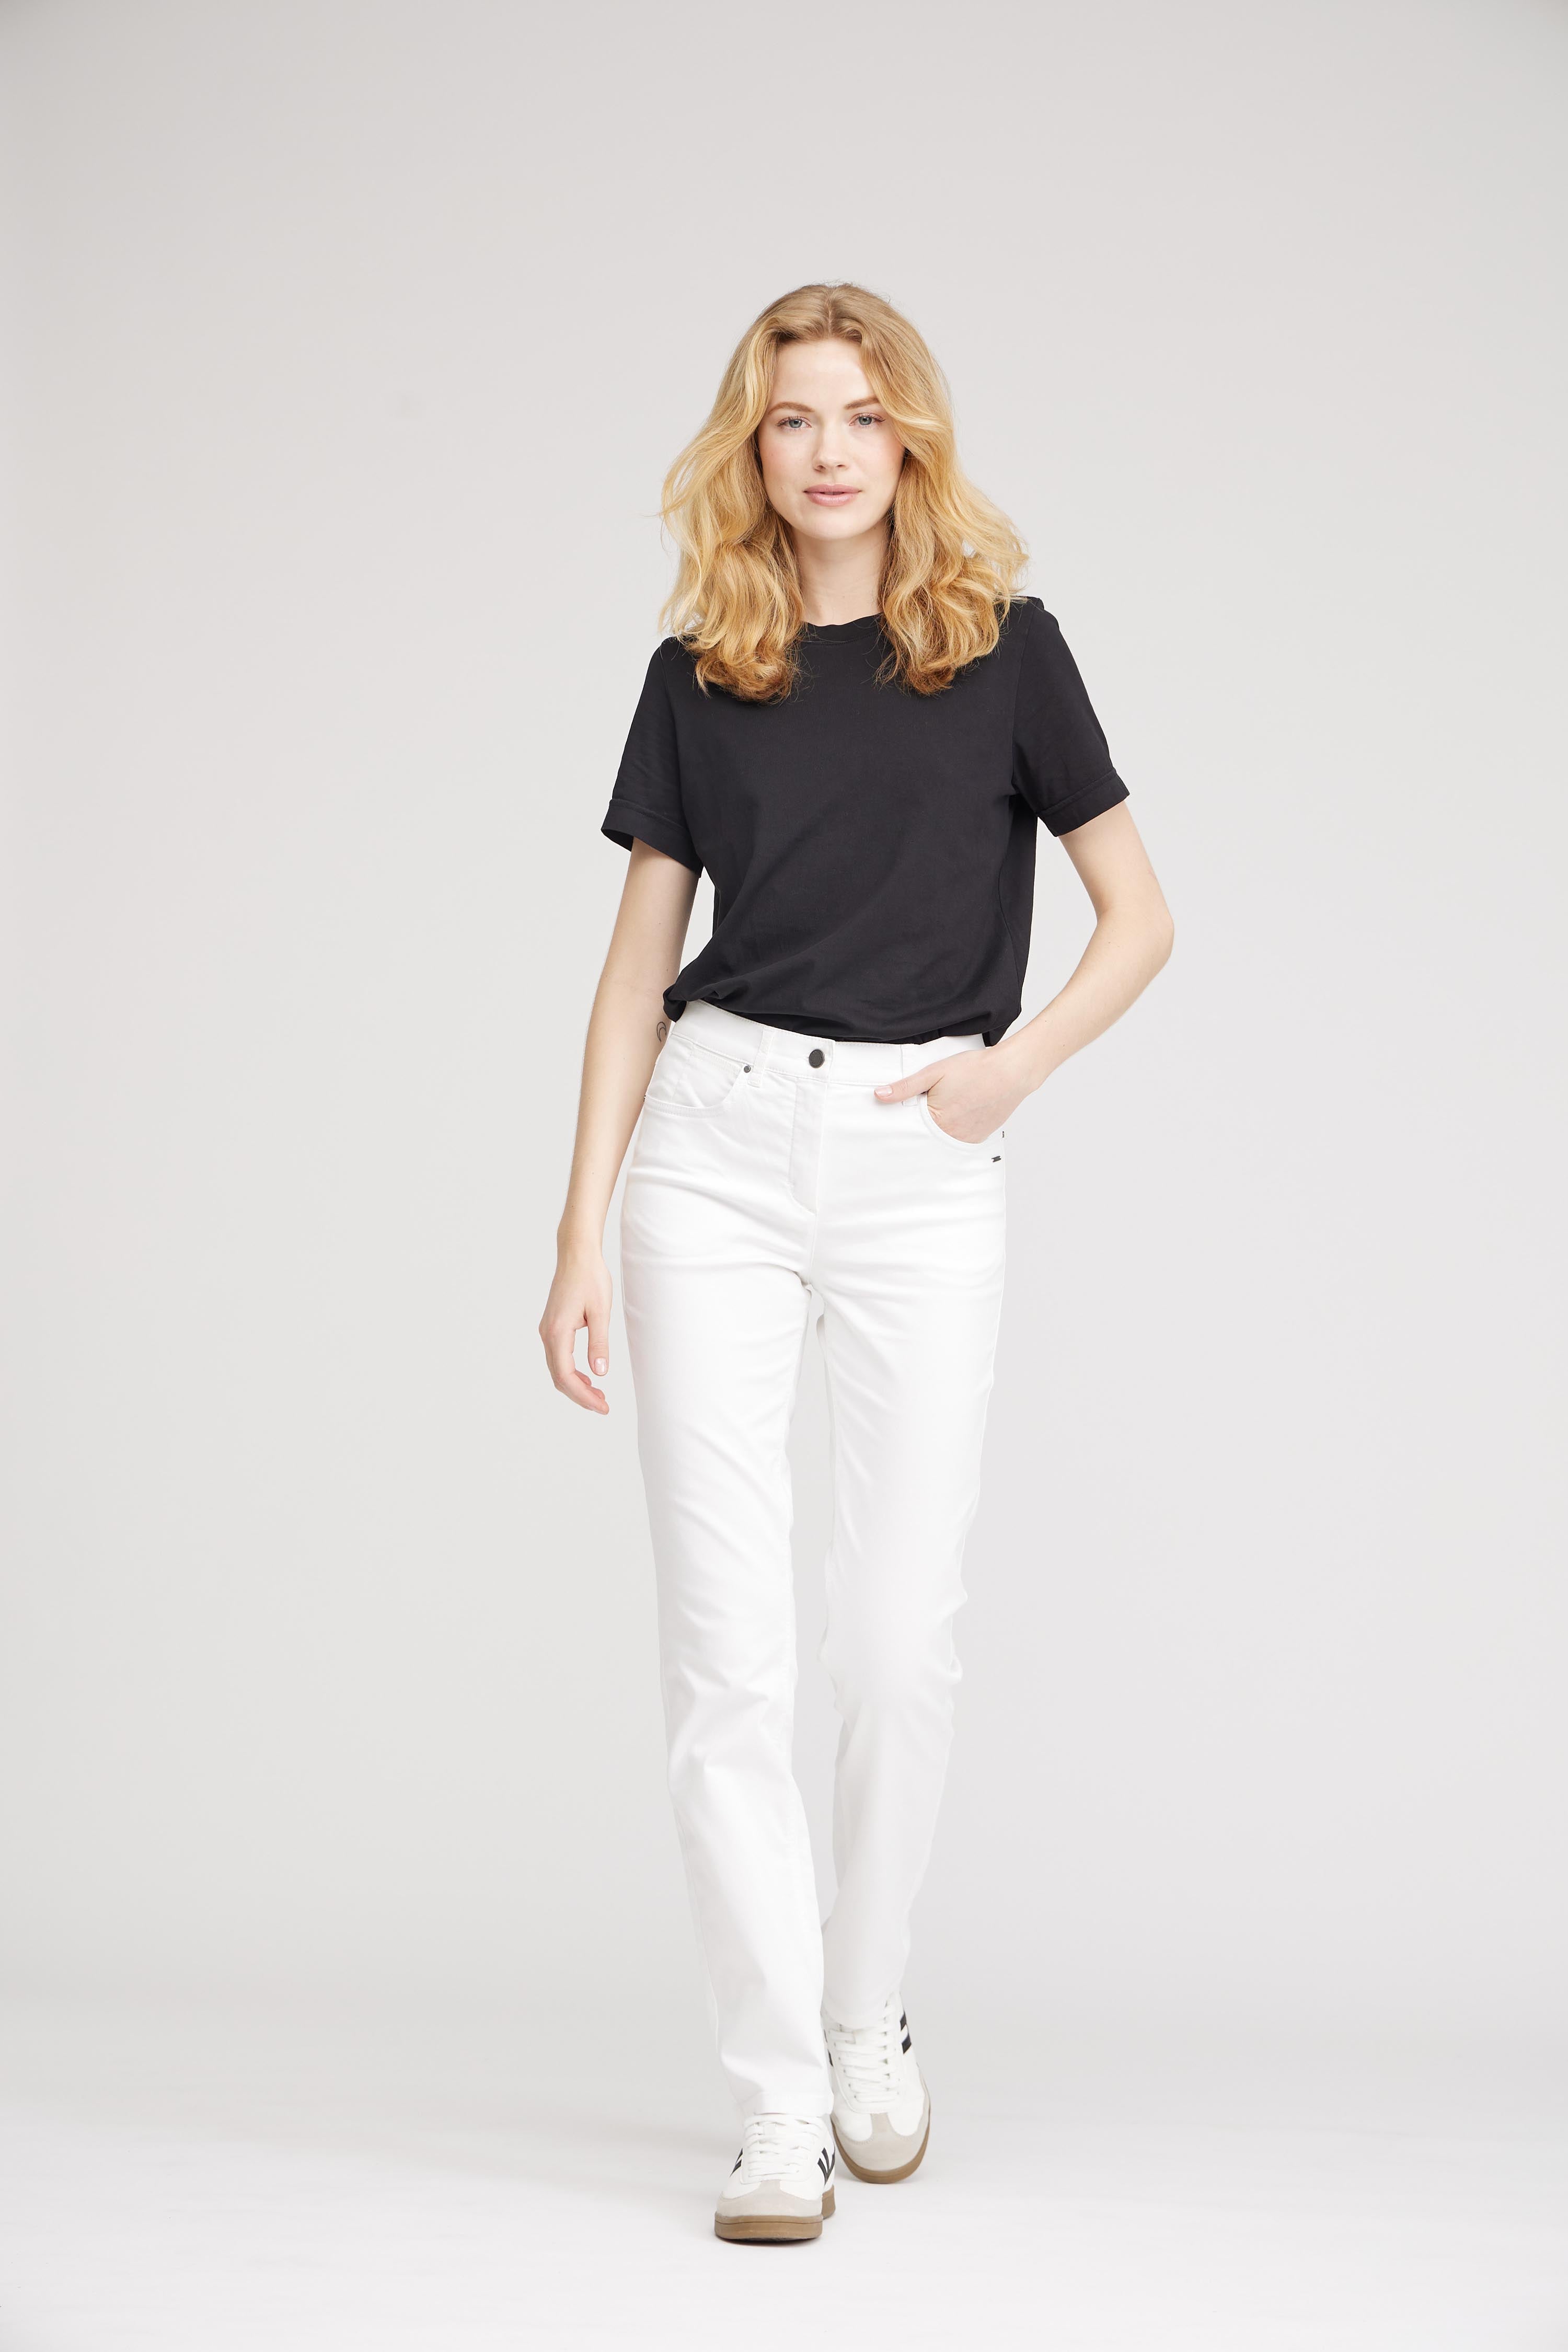 LAURIE Charlotte Regular - Medium Length Trousers REGULAR 10100 White